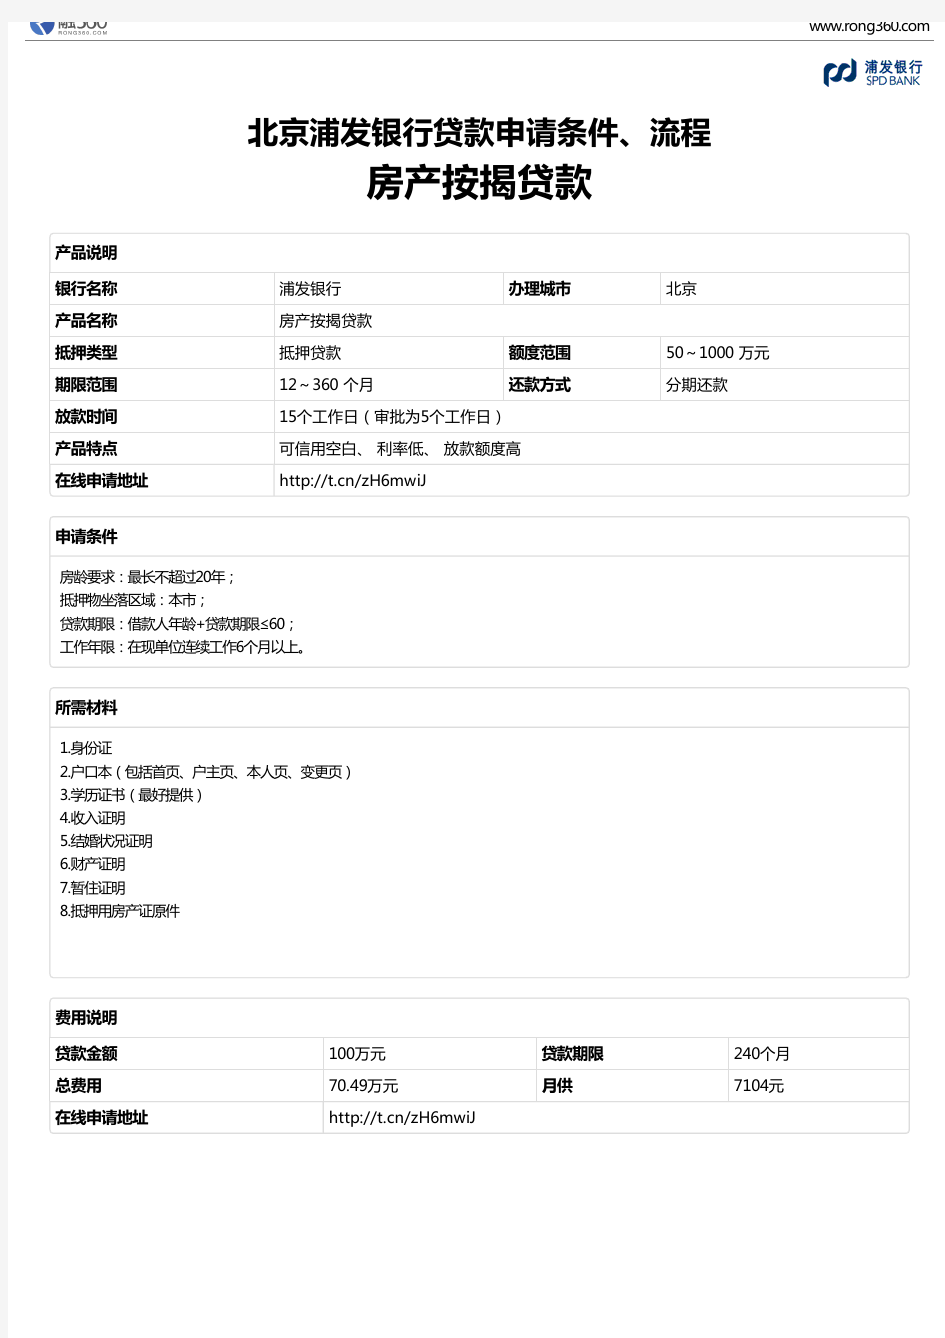 《房产按揭贷款》北京浦发银行-房屋抵押贷款-申请条件、材料、流程、利率